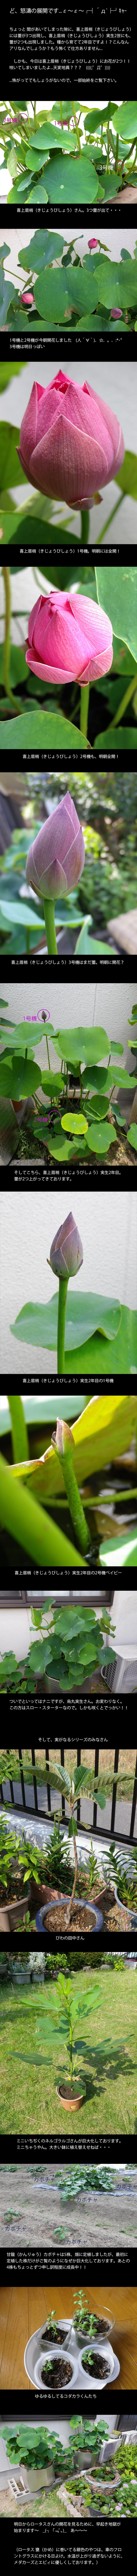 lotus20140702